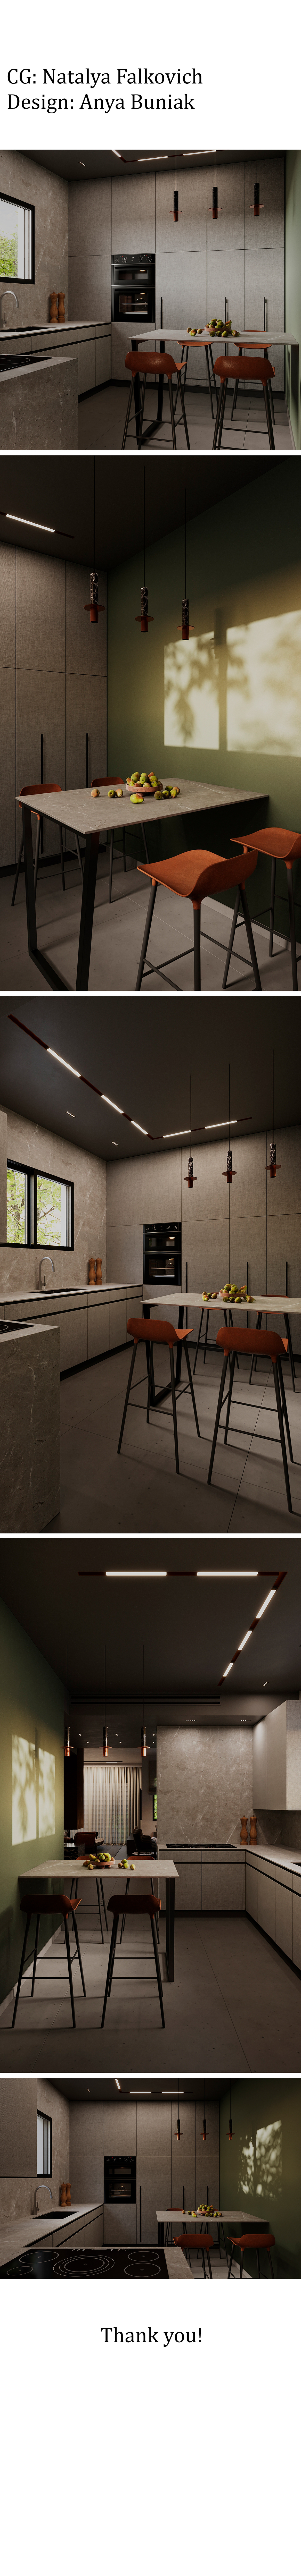 visualization architecture interior design  archviz Render exterior 3D kitchen design Interior